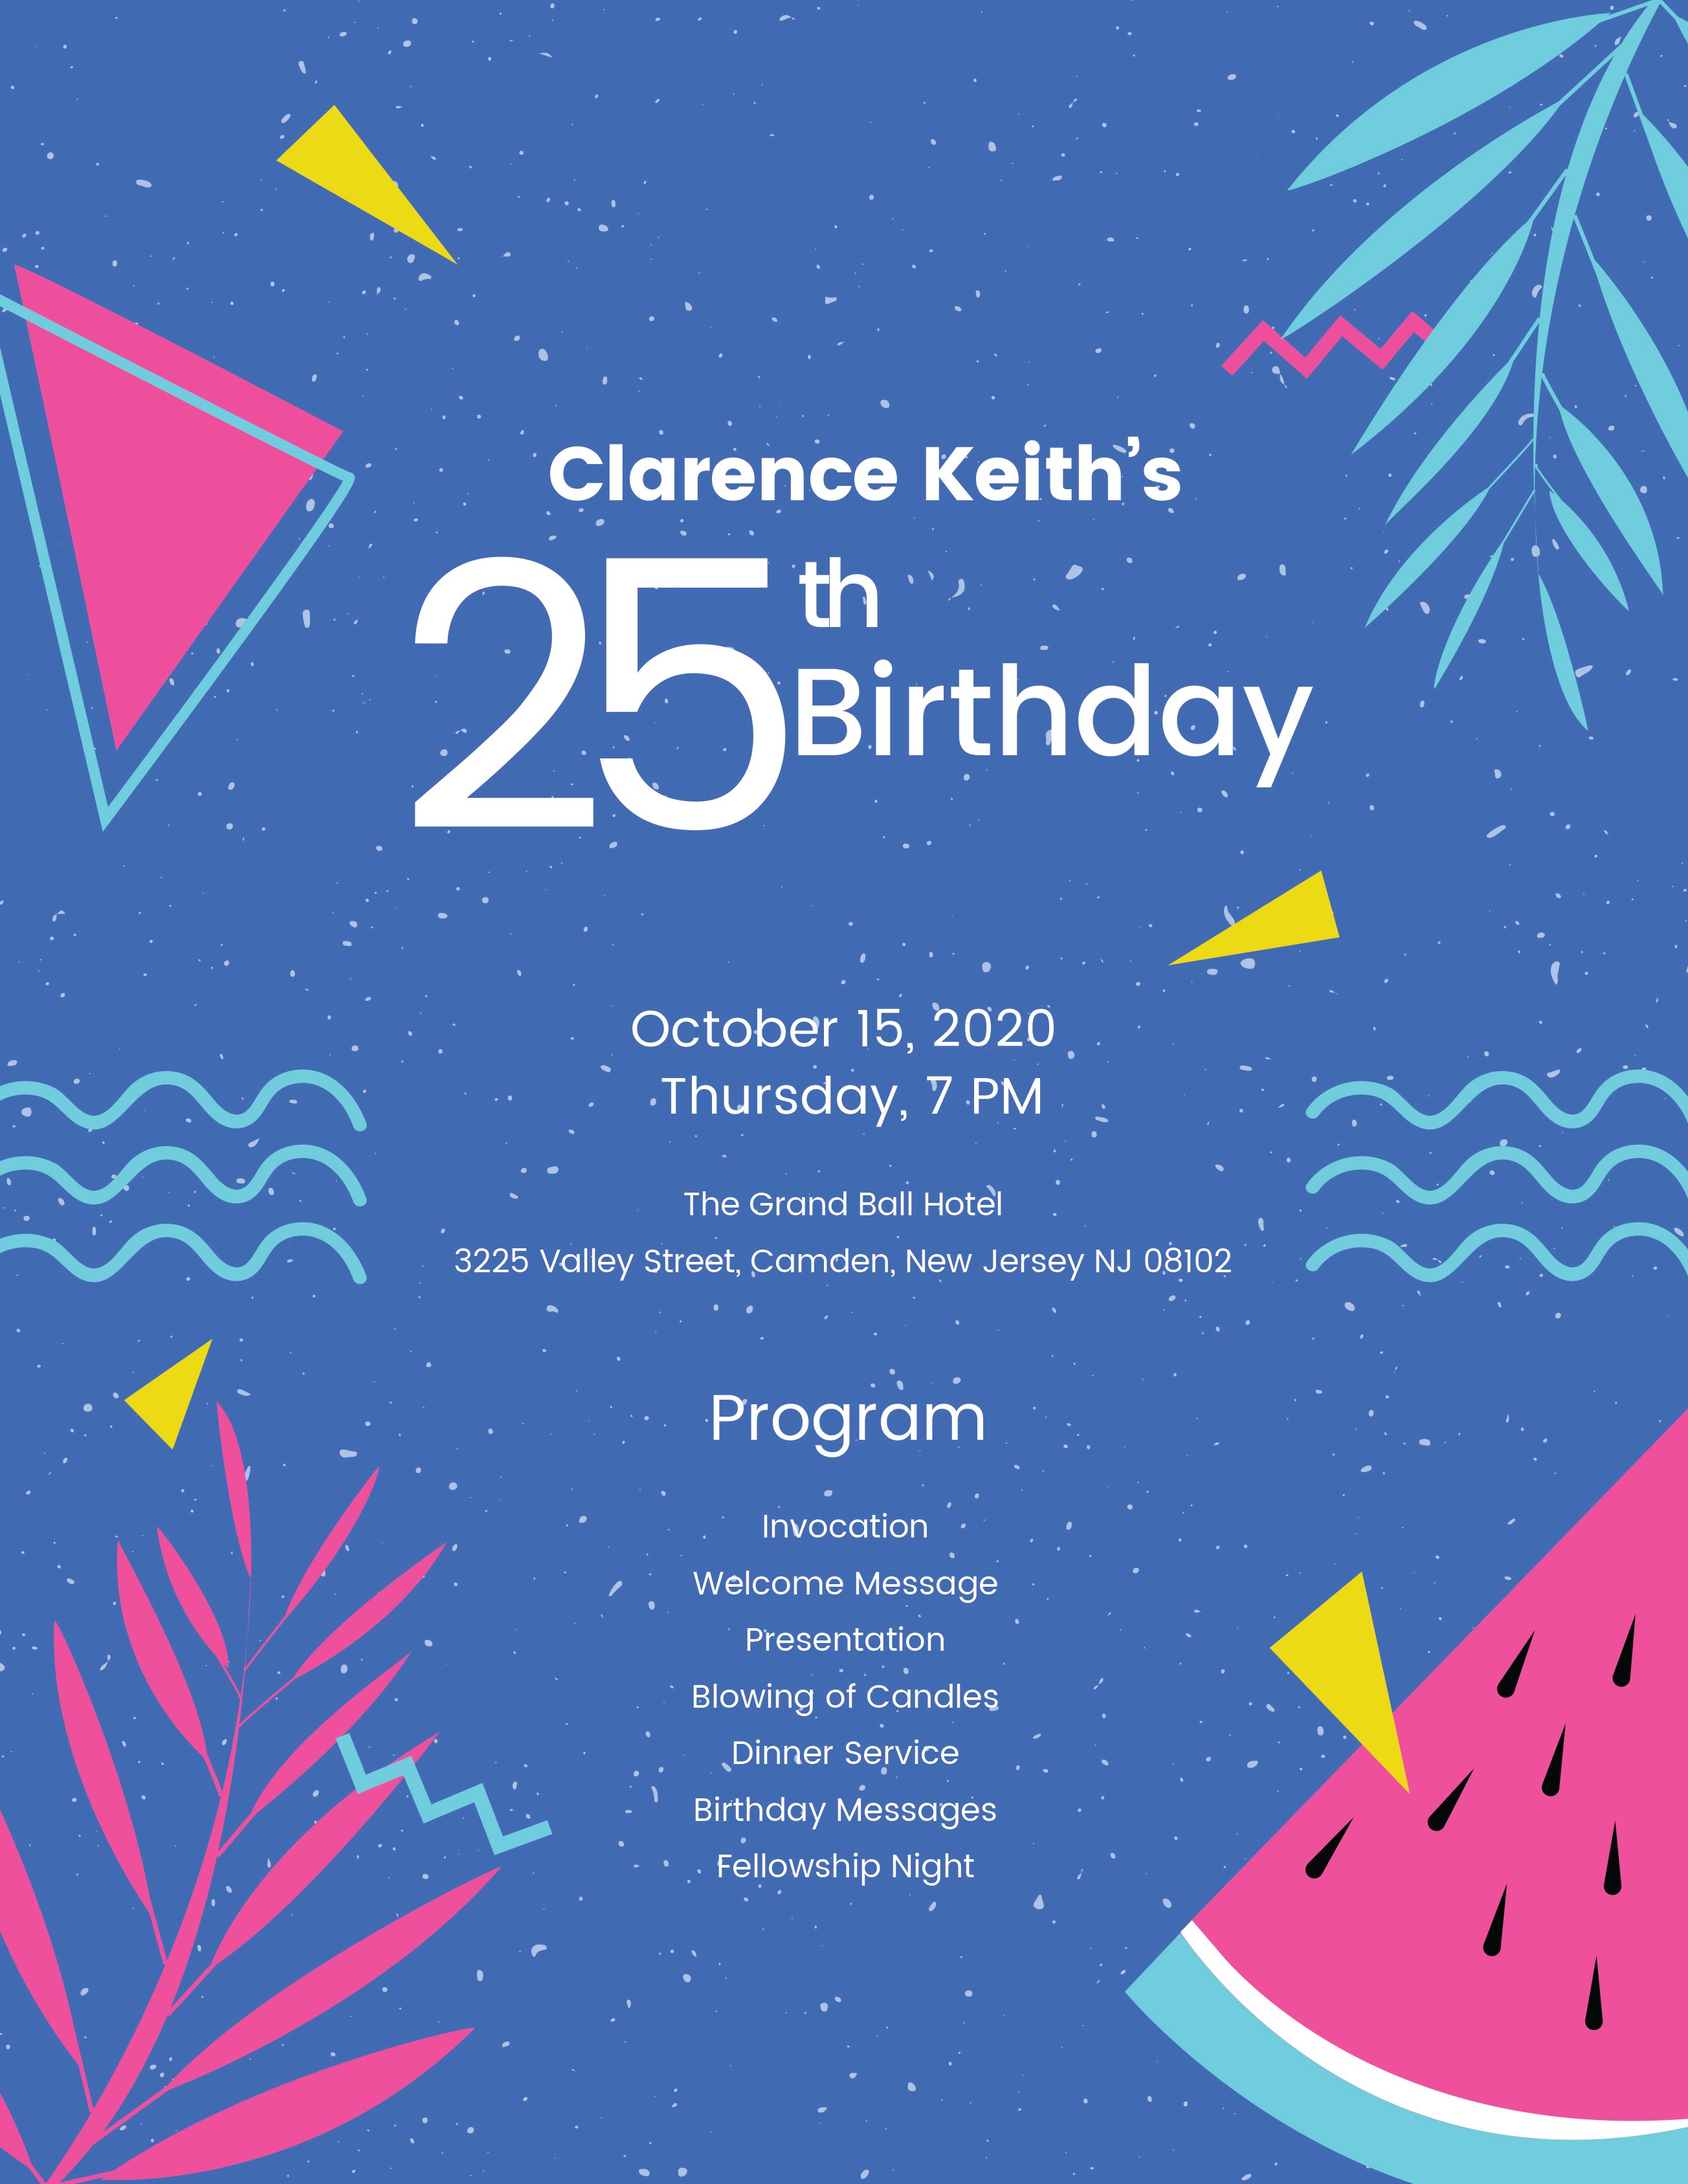 Sample Birthday Program Template in Adobe Illustrator